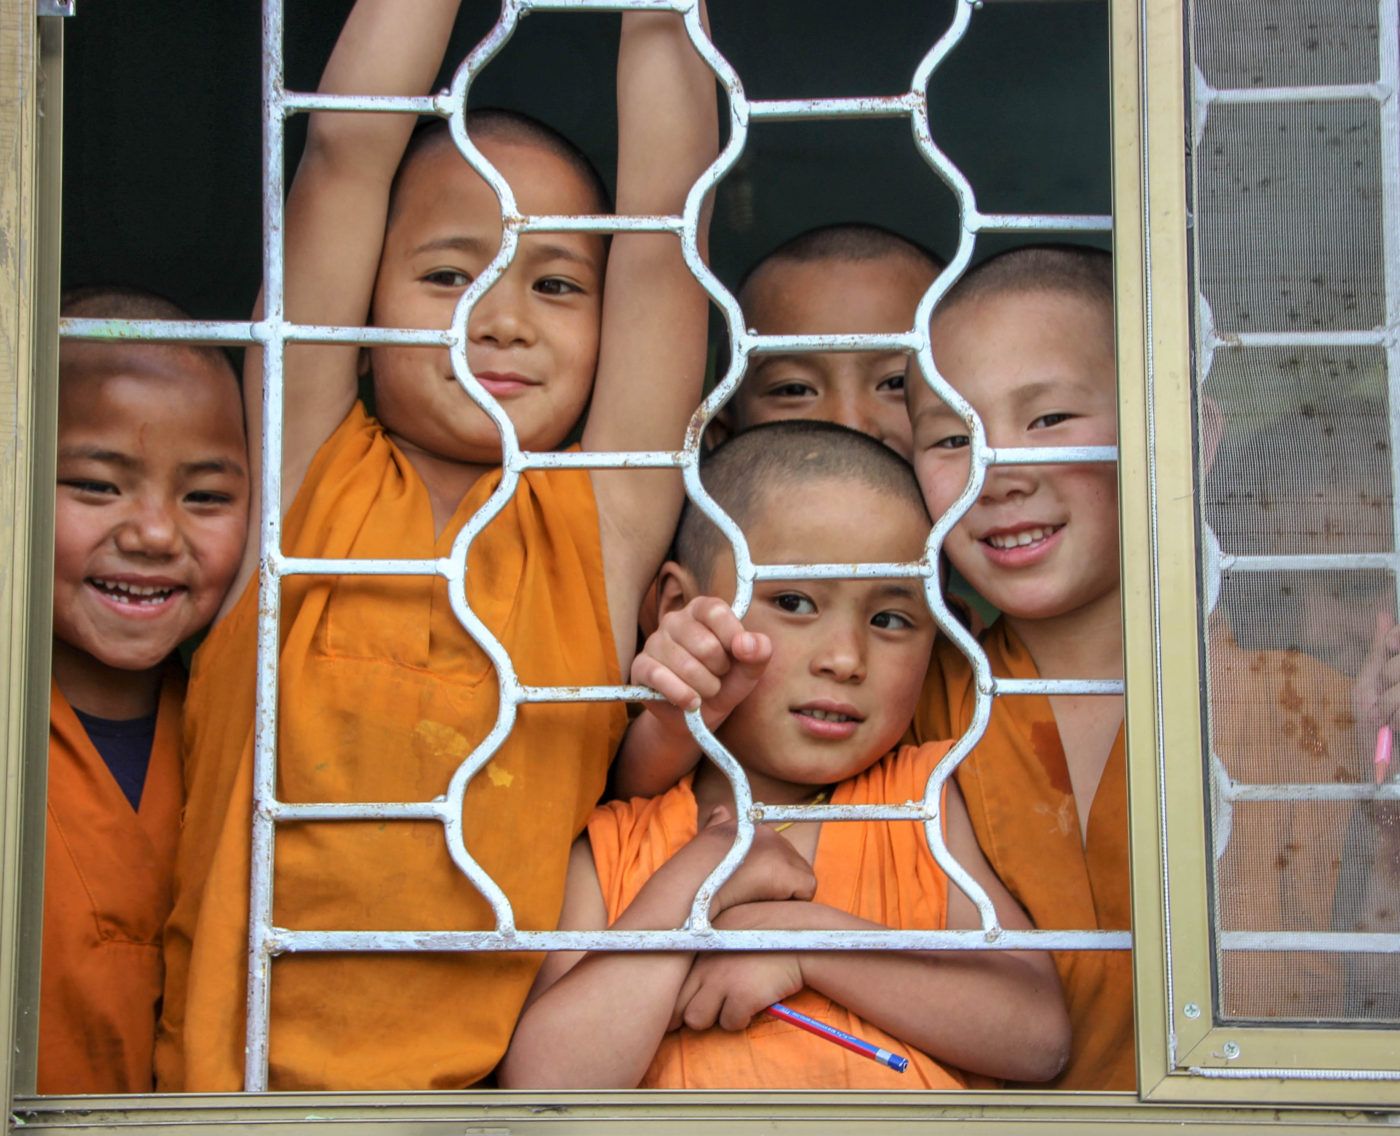 A Heartwarming Day at Nepal’s Tibetan Refugee Settlement